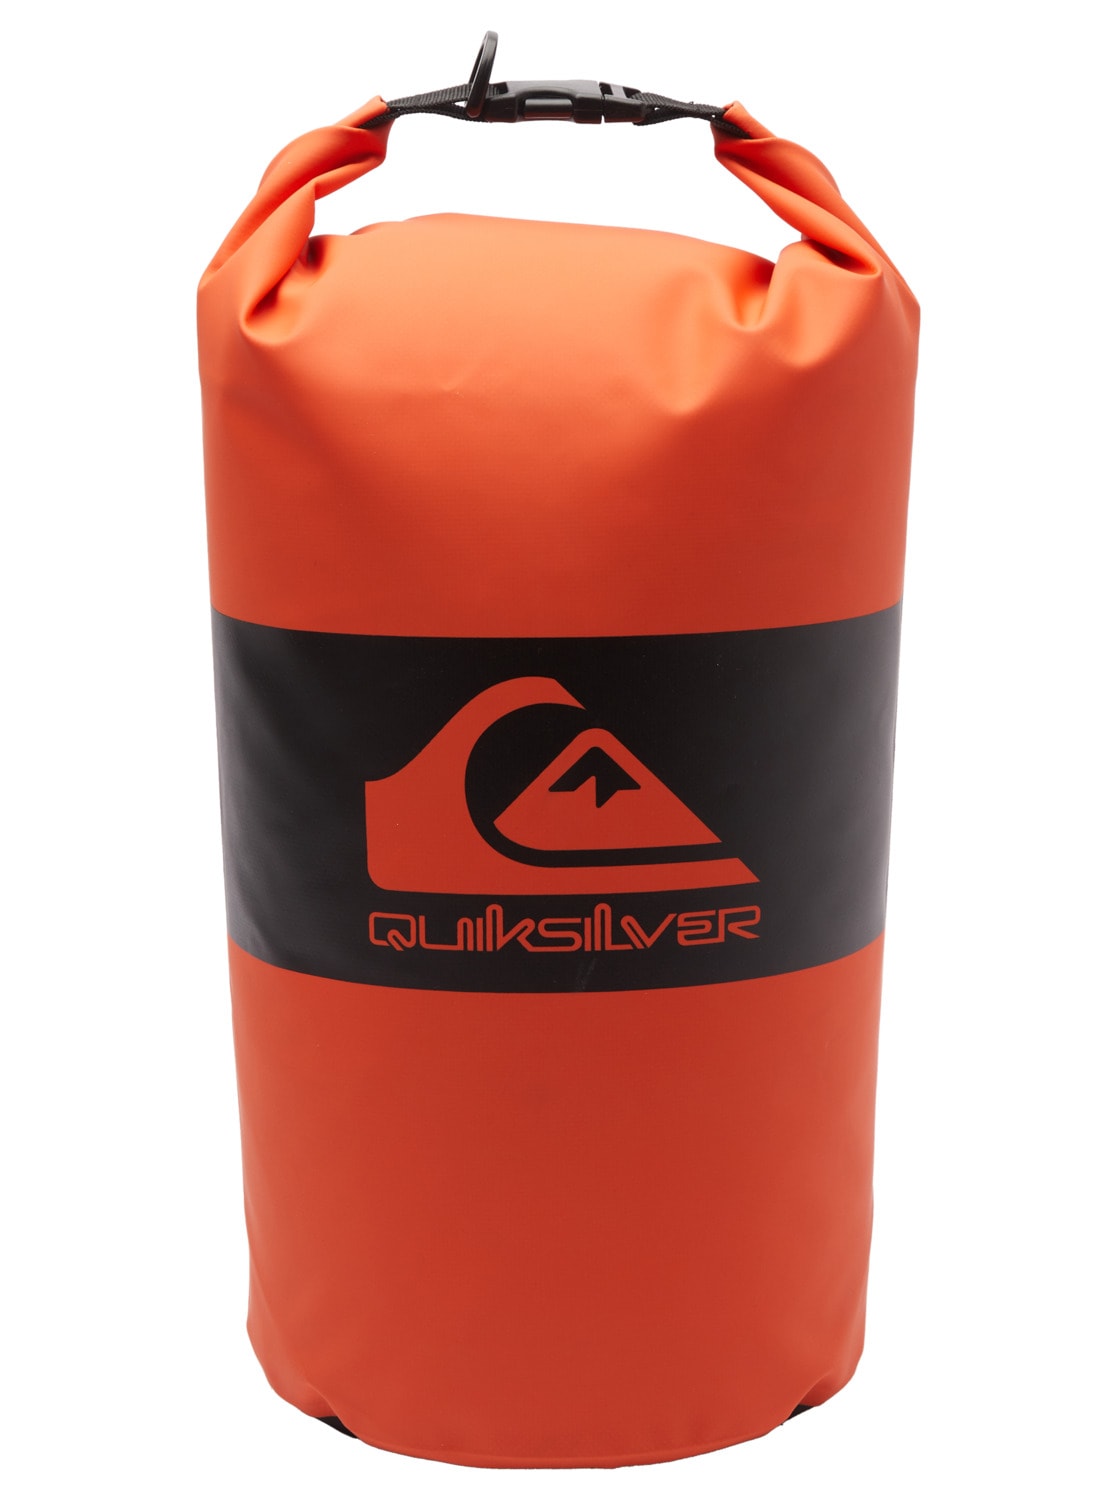 Quiksilver Drybag »Medium Water Stash 10L« von Quiksilver